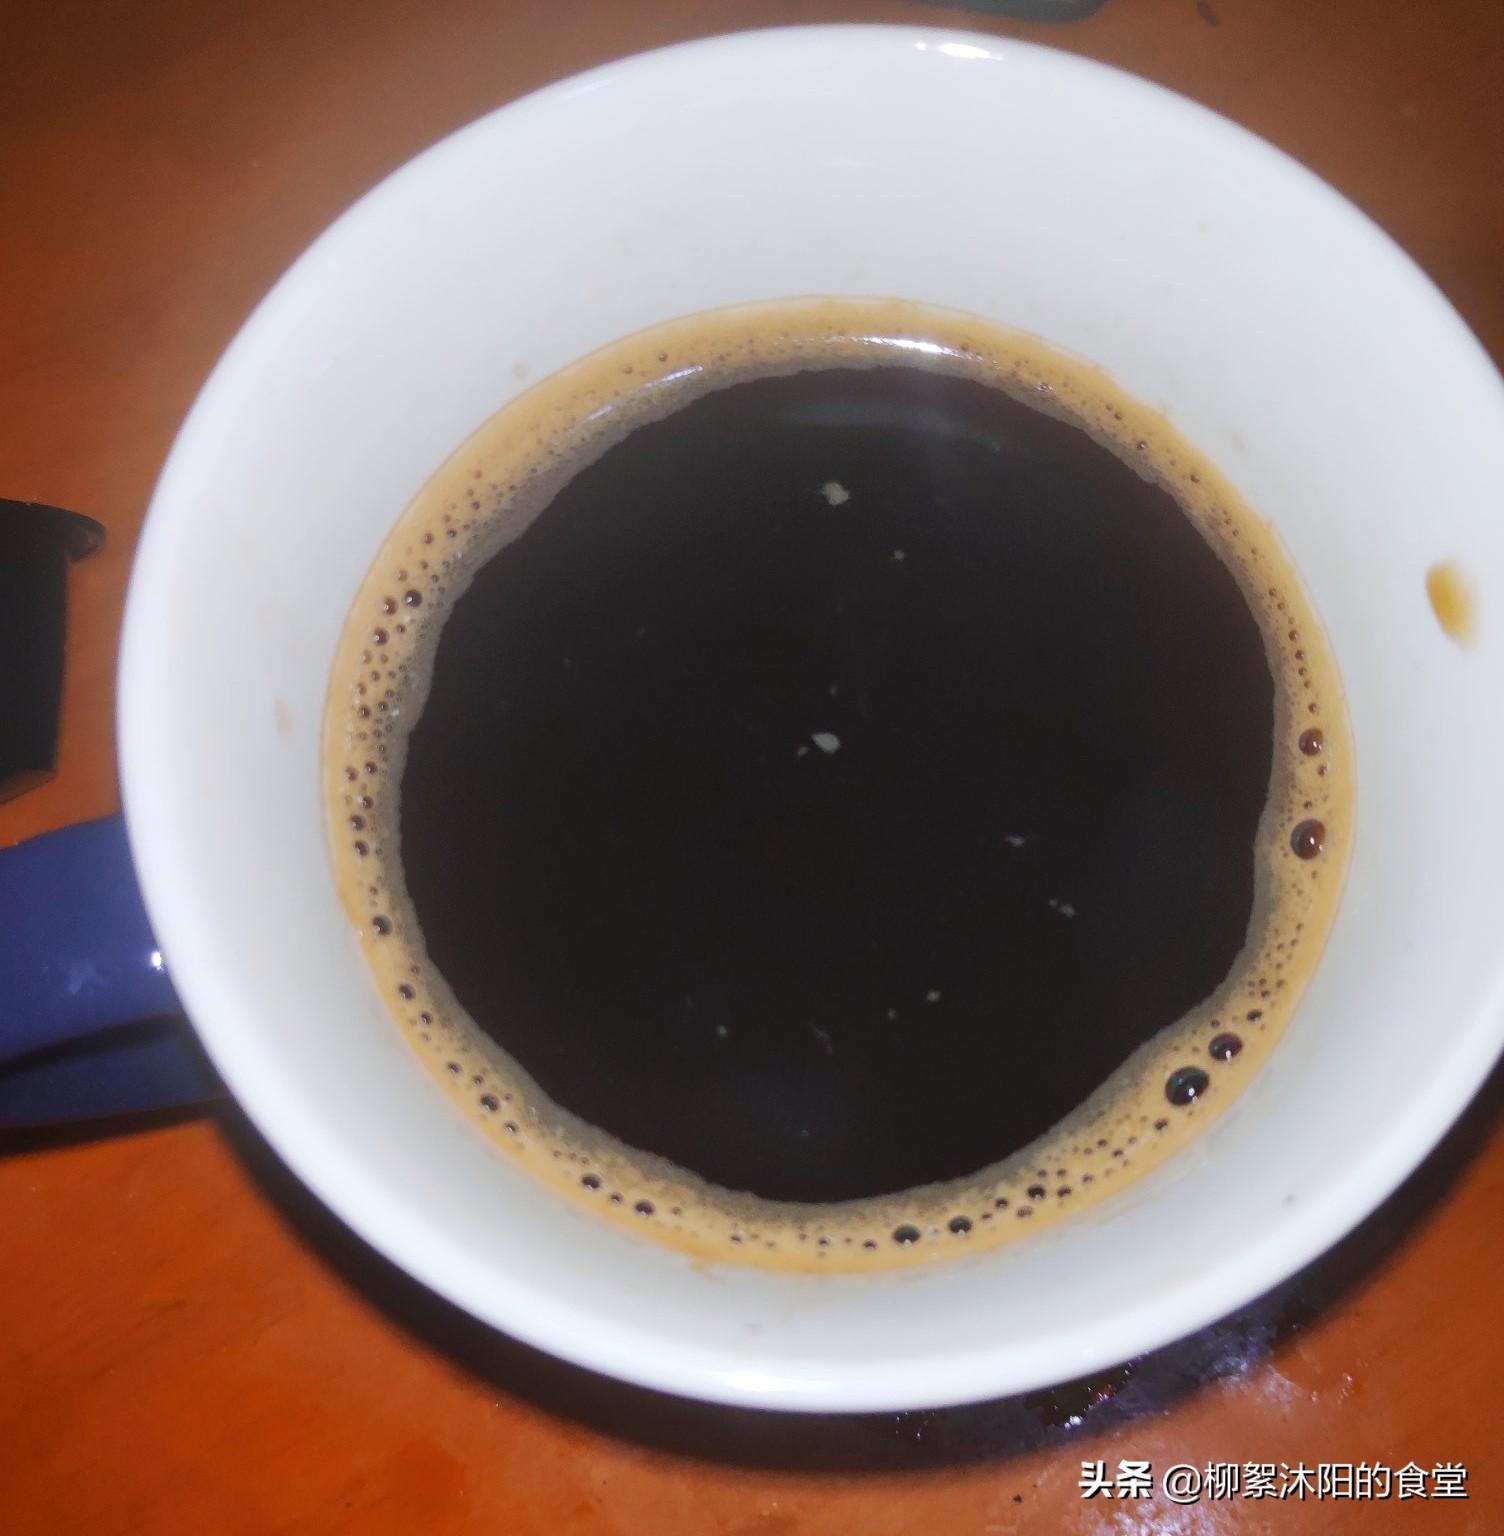 黑咖啡的作用